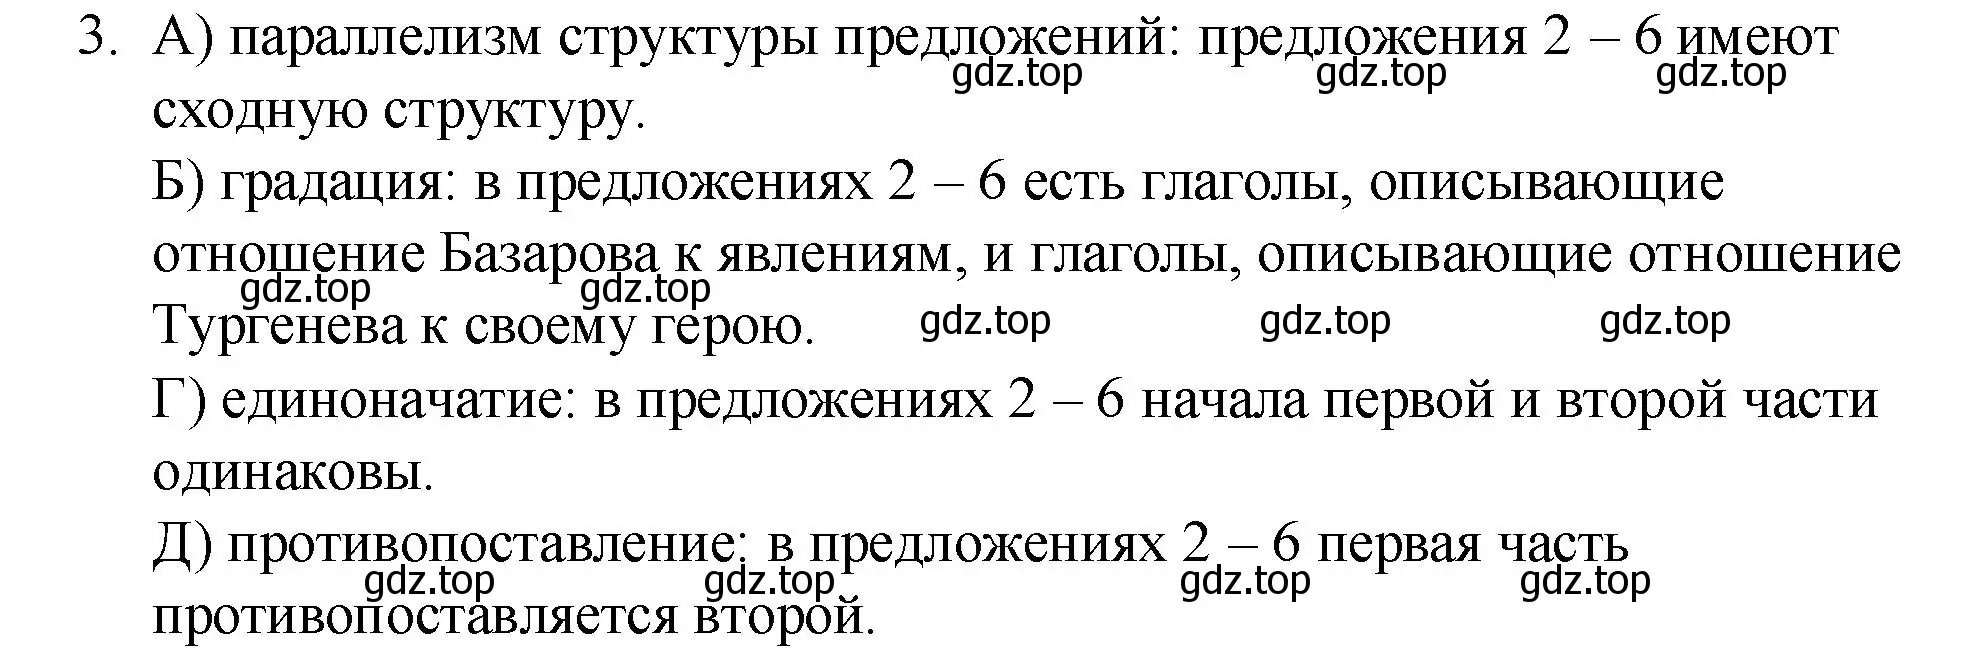 Решение номер 3 (страница 349) гдз по русскому языку 10-11 класс Гольцова, Шамшин, учебник 1 часть